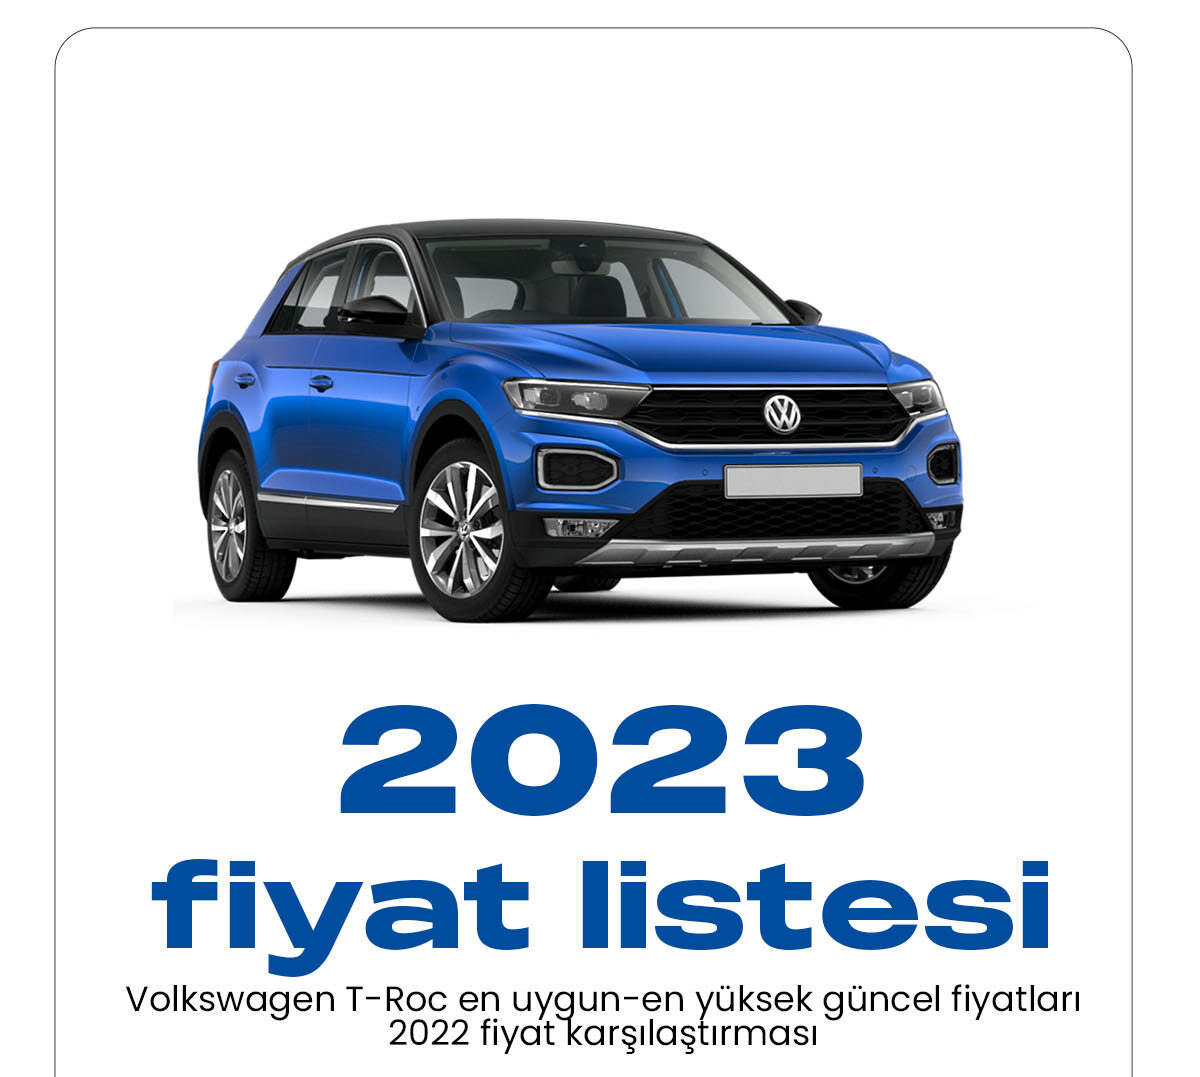 Volkswagen T-Roc Ocak fiyat listesi yayımlandı.Ünlü alman araç markası Volkswagen 2023 yılı yeni fiyat listesini güncelledi. Volkswagen kaliteli araç denilince akla ilk gelen araç markaları arasında yer alıyor.